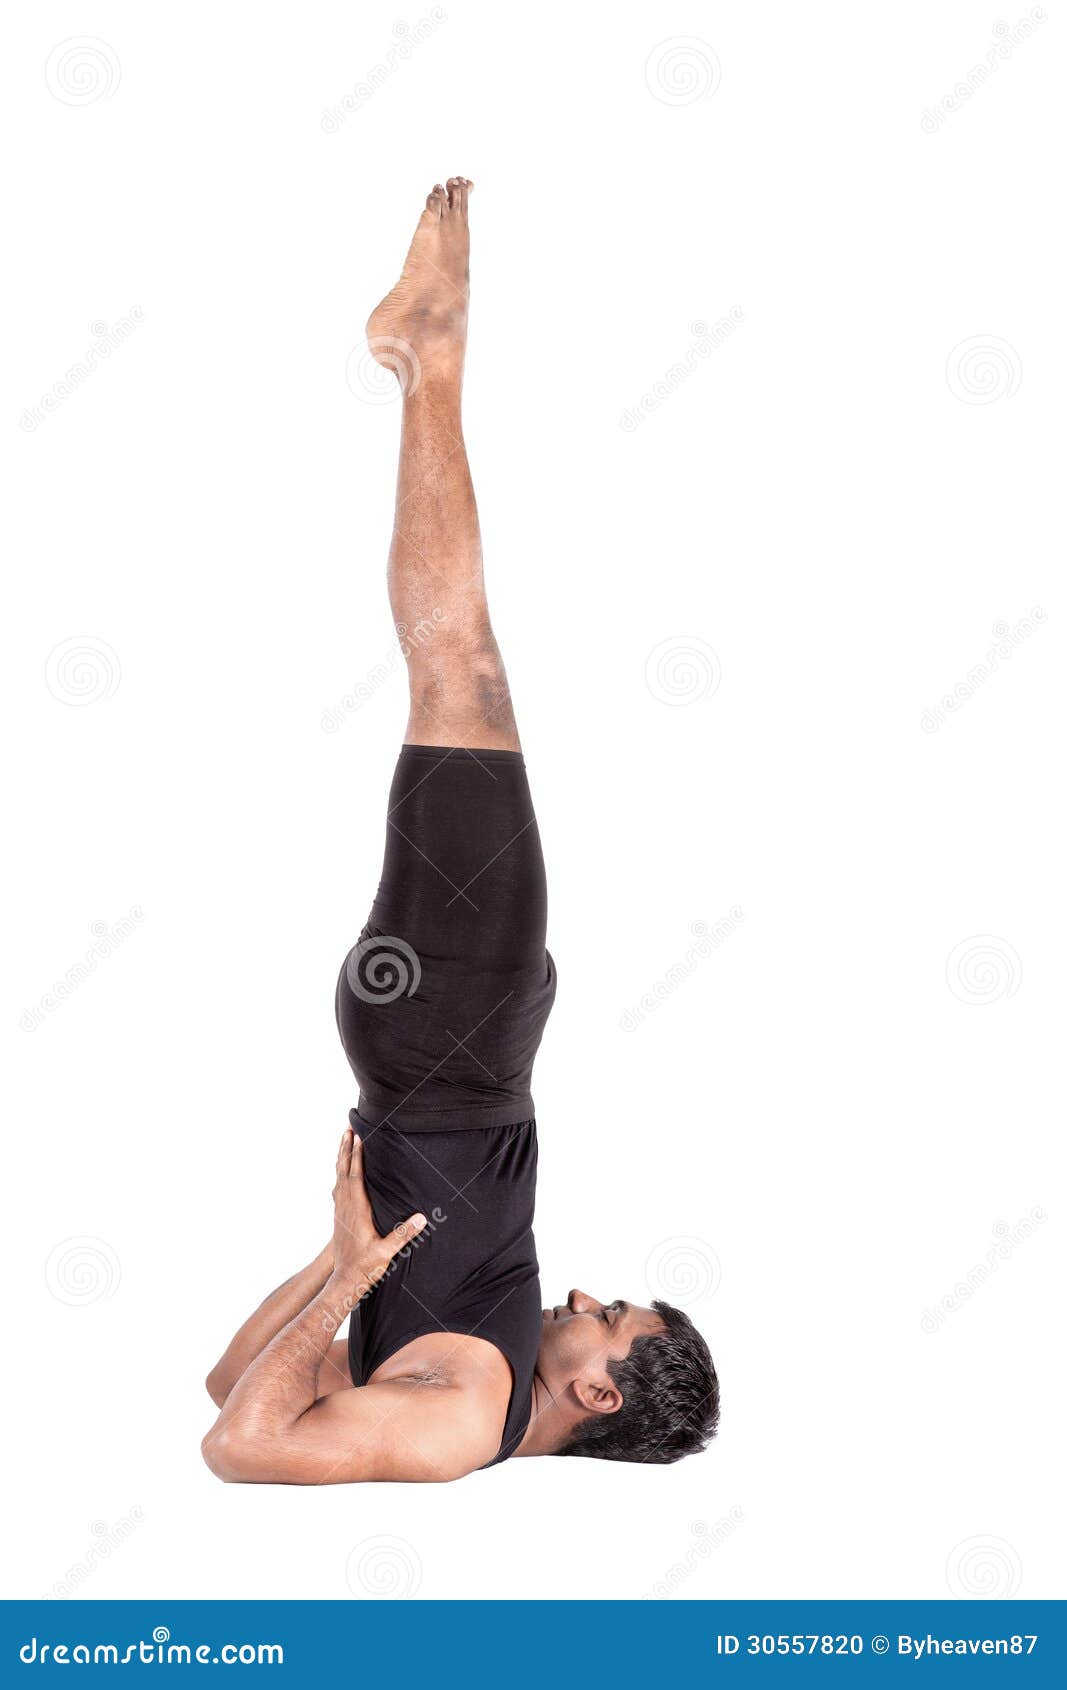 Yoga Pose: Standing Forward Bend with Shoulder Opener | Pocket Yoga